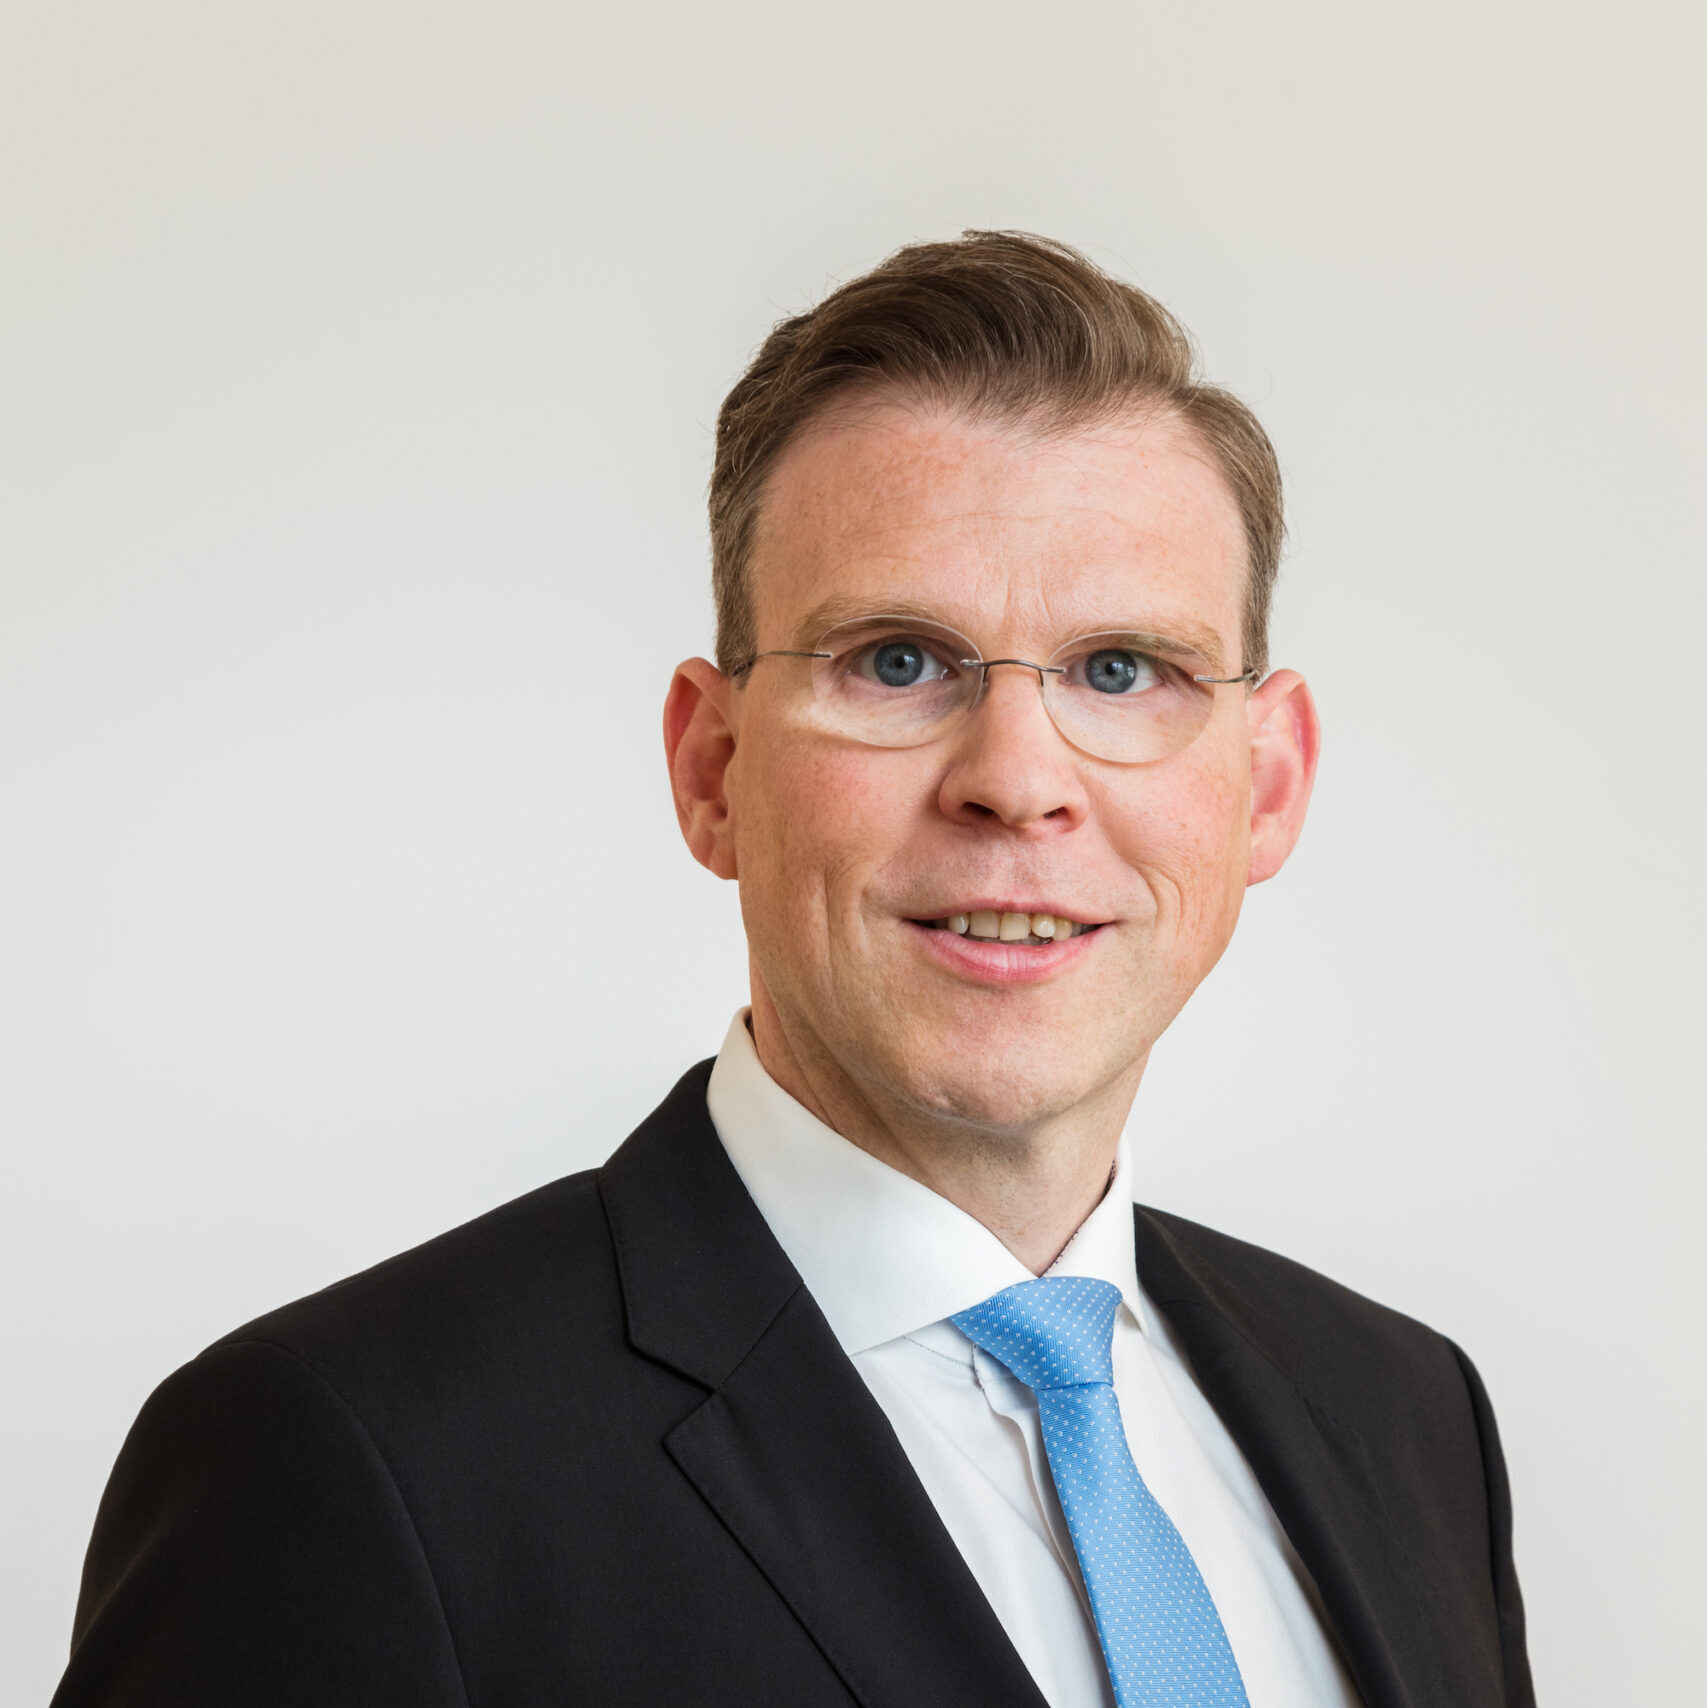 Florian Graf wird zum 1. Januar 2022 sein Amt als neuer Hauptgeschäftsführer des Bundesverbandes der Sicherheitswirtschaft (BDSW) mit Sitz in Berlin aufnehmen